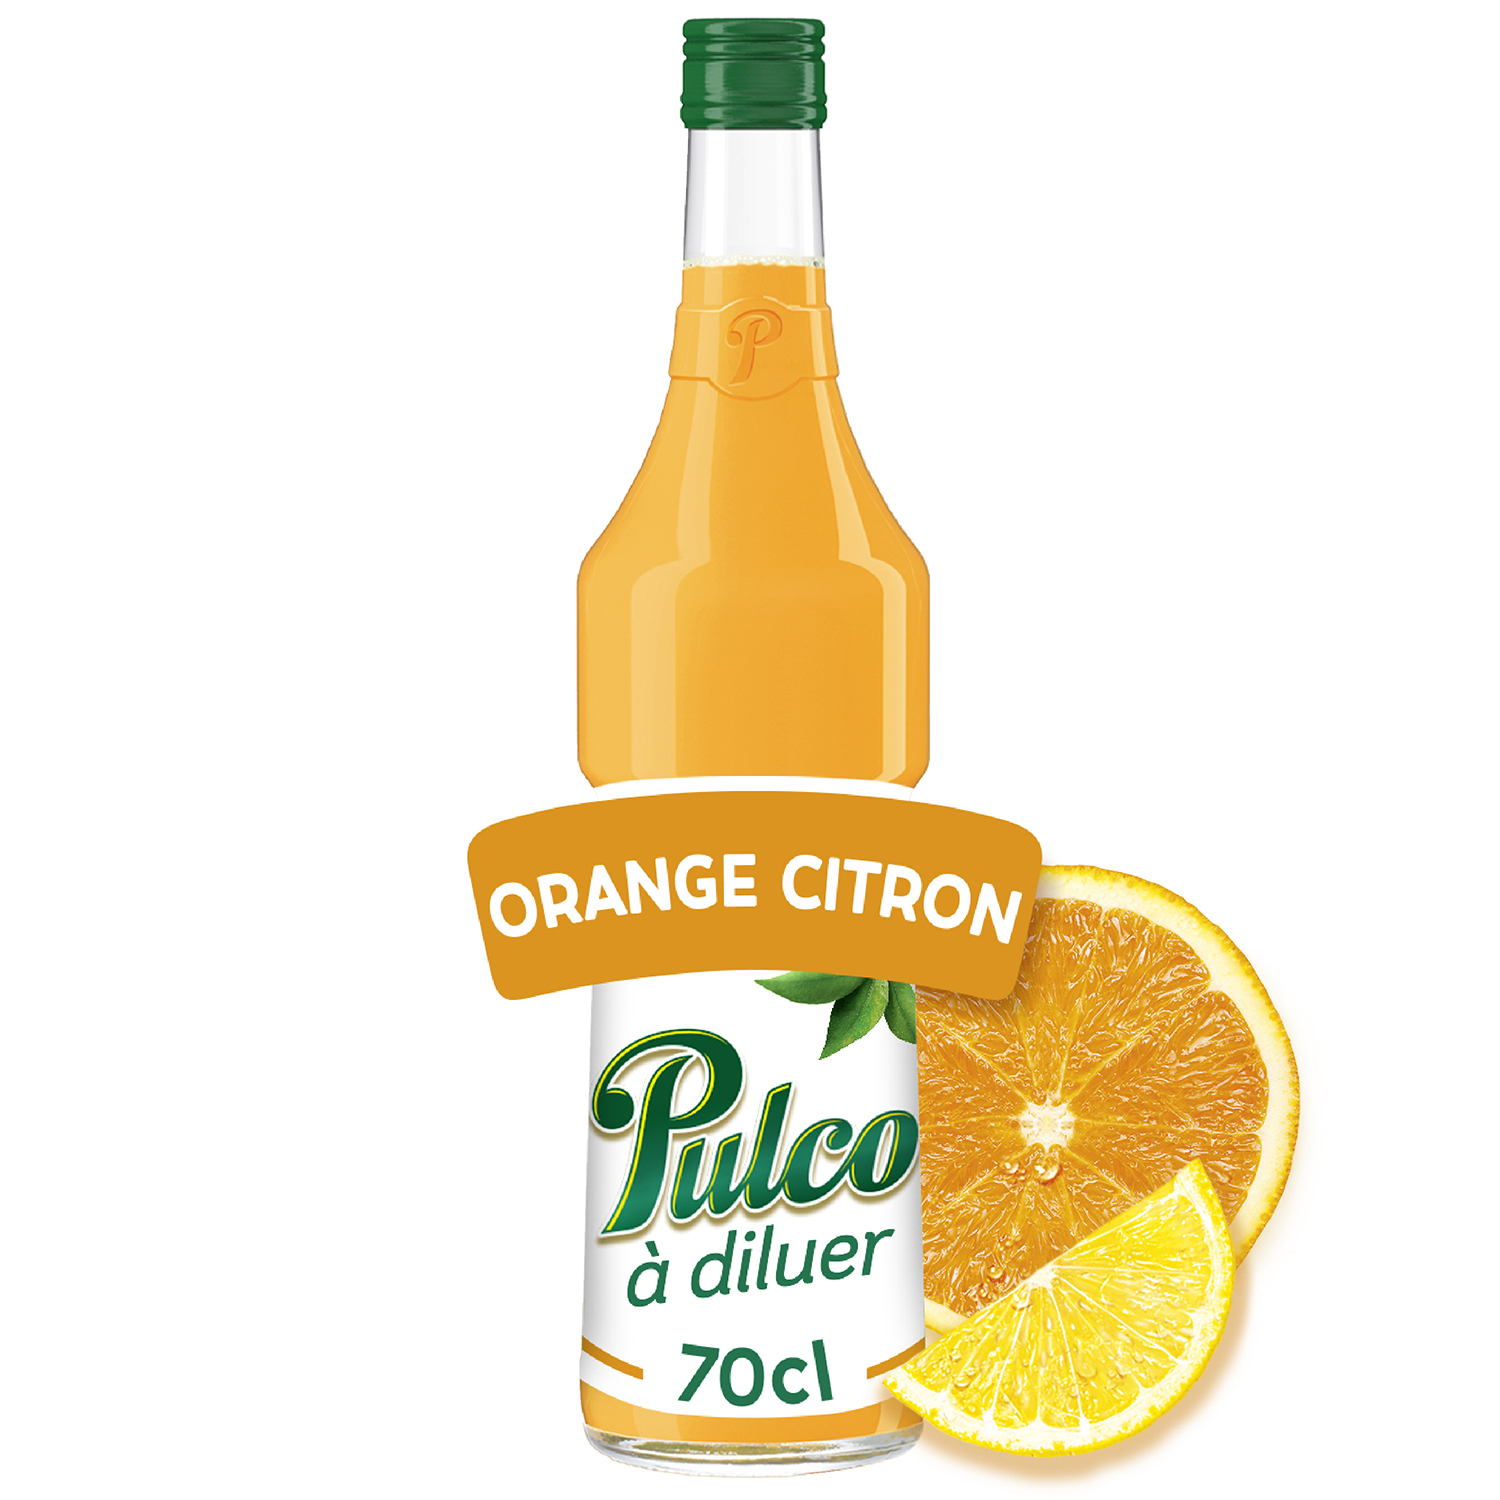 PULCO Concentré orange et citron à diluer bteille verre 70cl pas